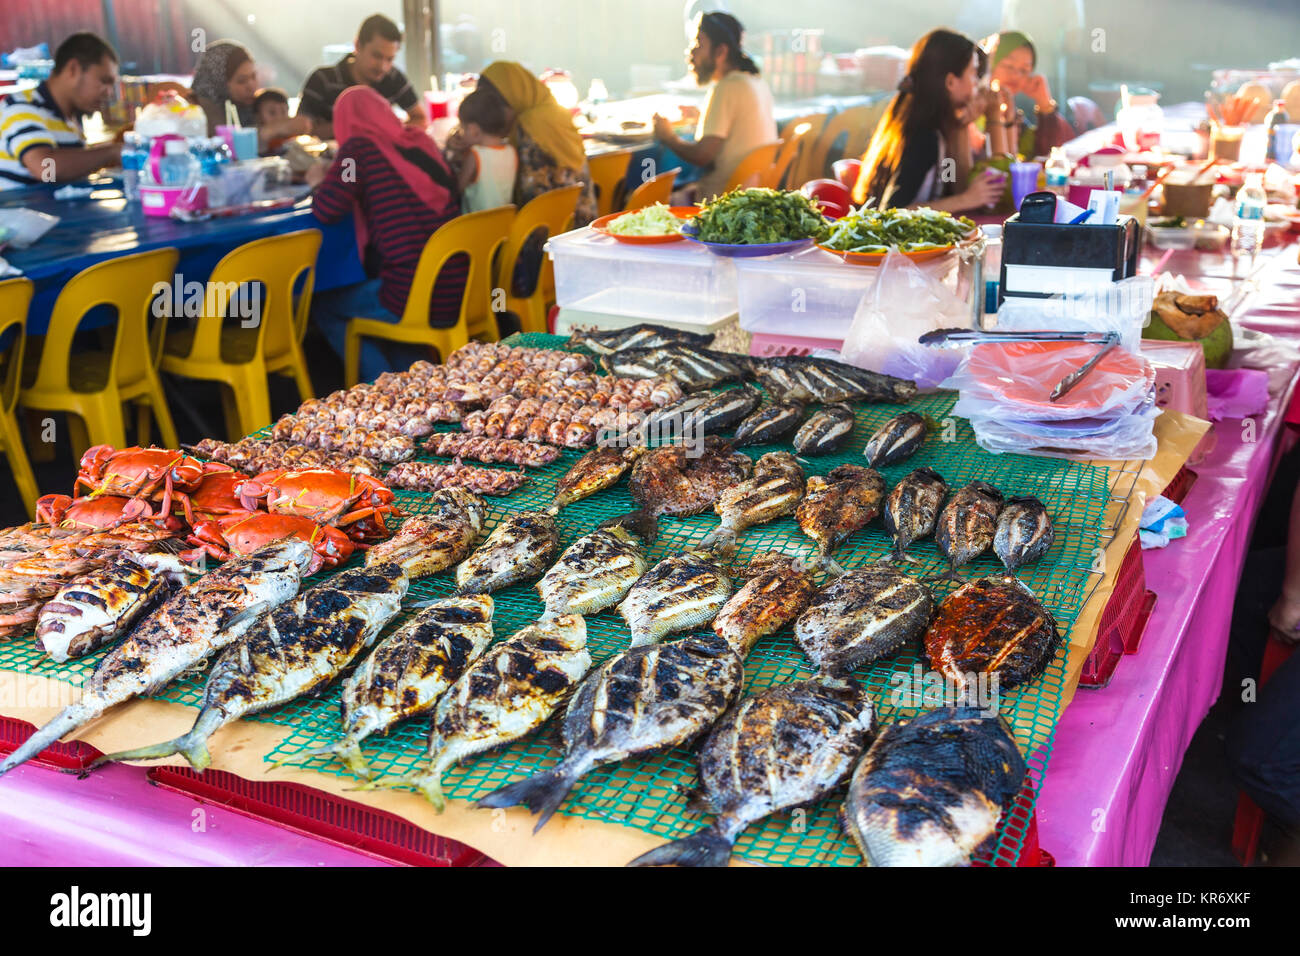 Hohe Betrachtungswinkel von gegrilltem Fisch auf einem Tisch in einem Lebensmittelmarkt Restaurant, Menschen sitzen und essen an den Tischen in den Hintergrund. Stockfoto